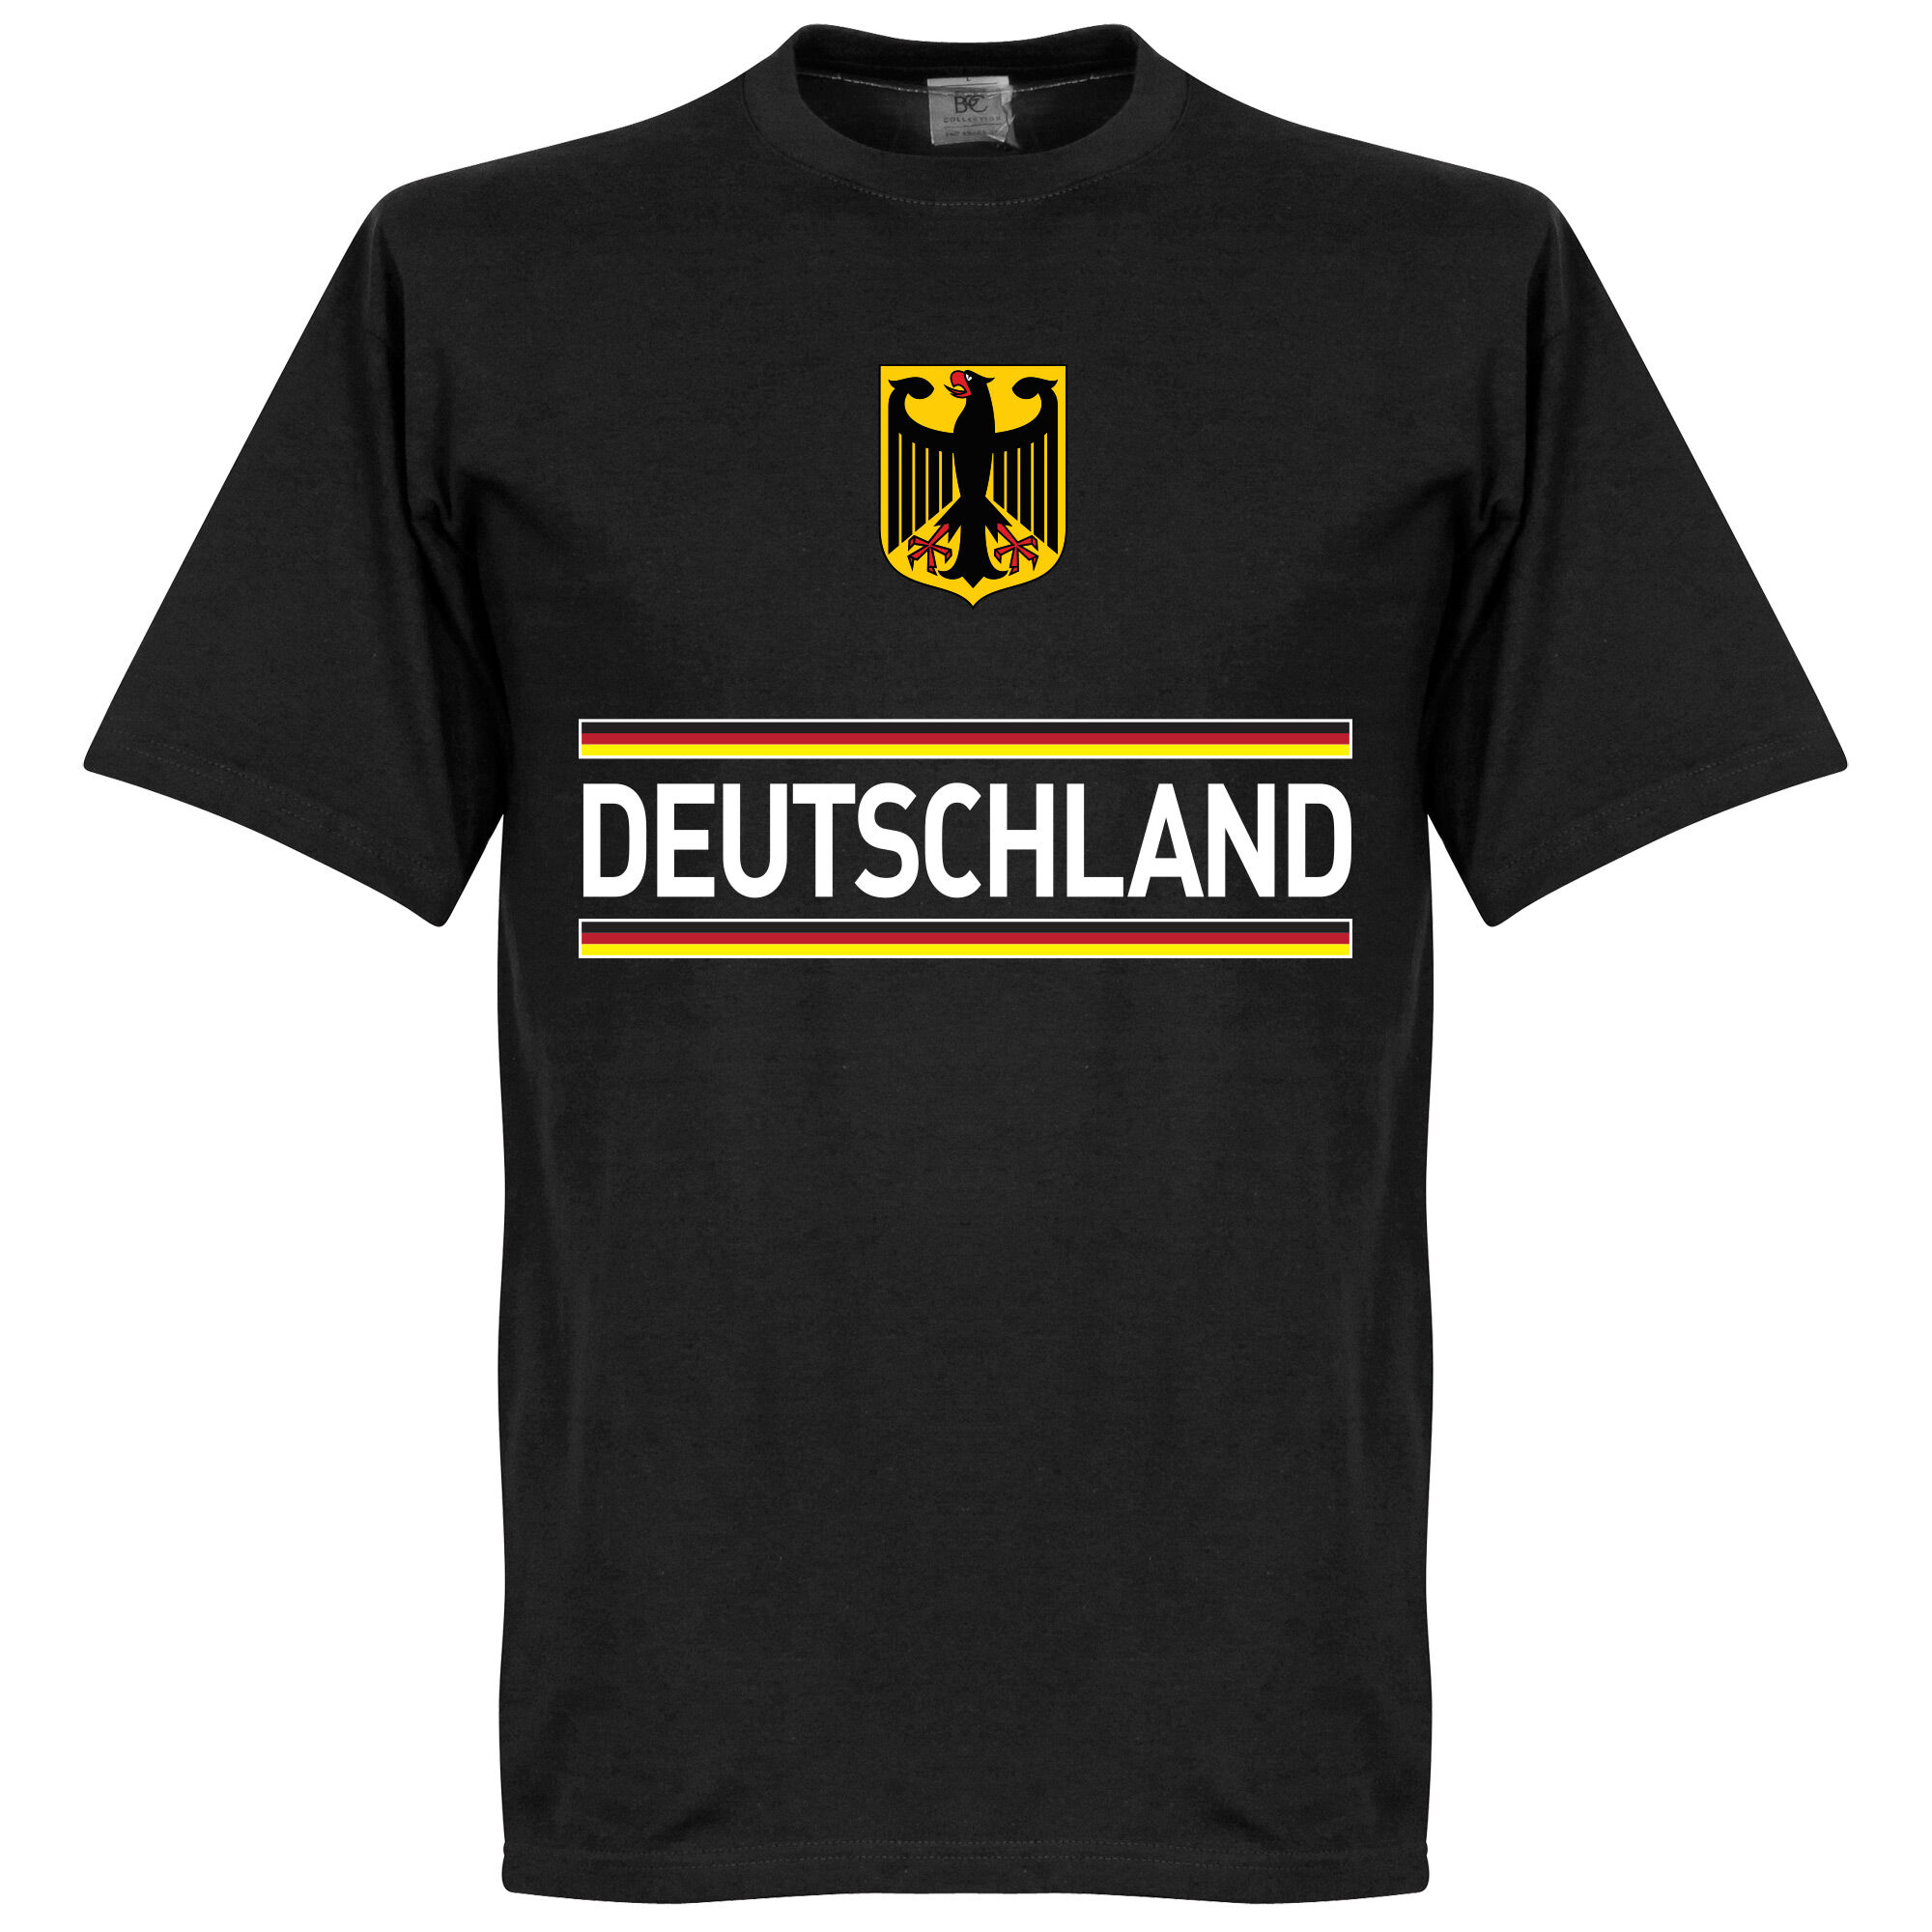 Německo - Tričko dětské - černé